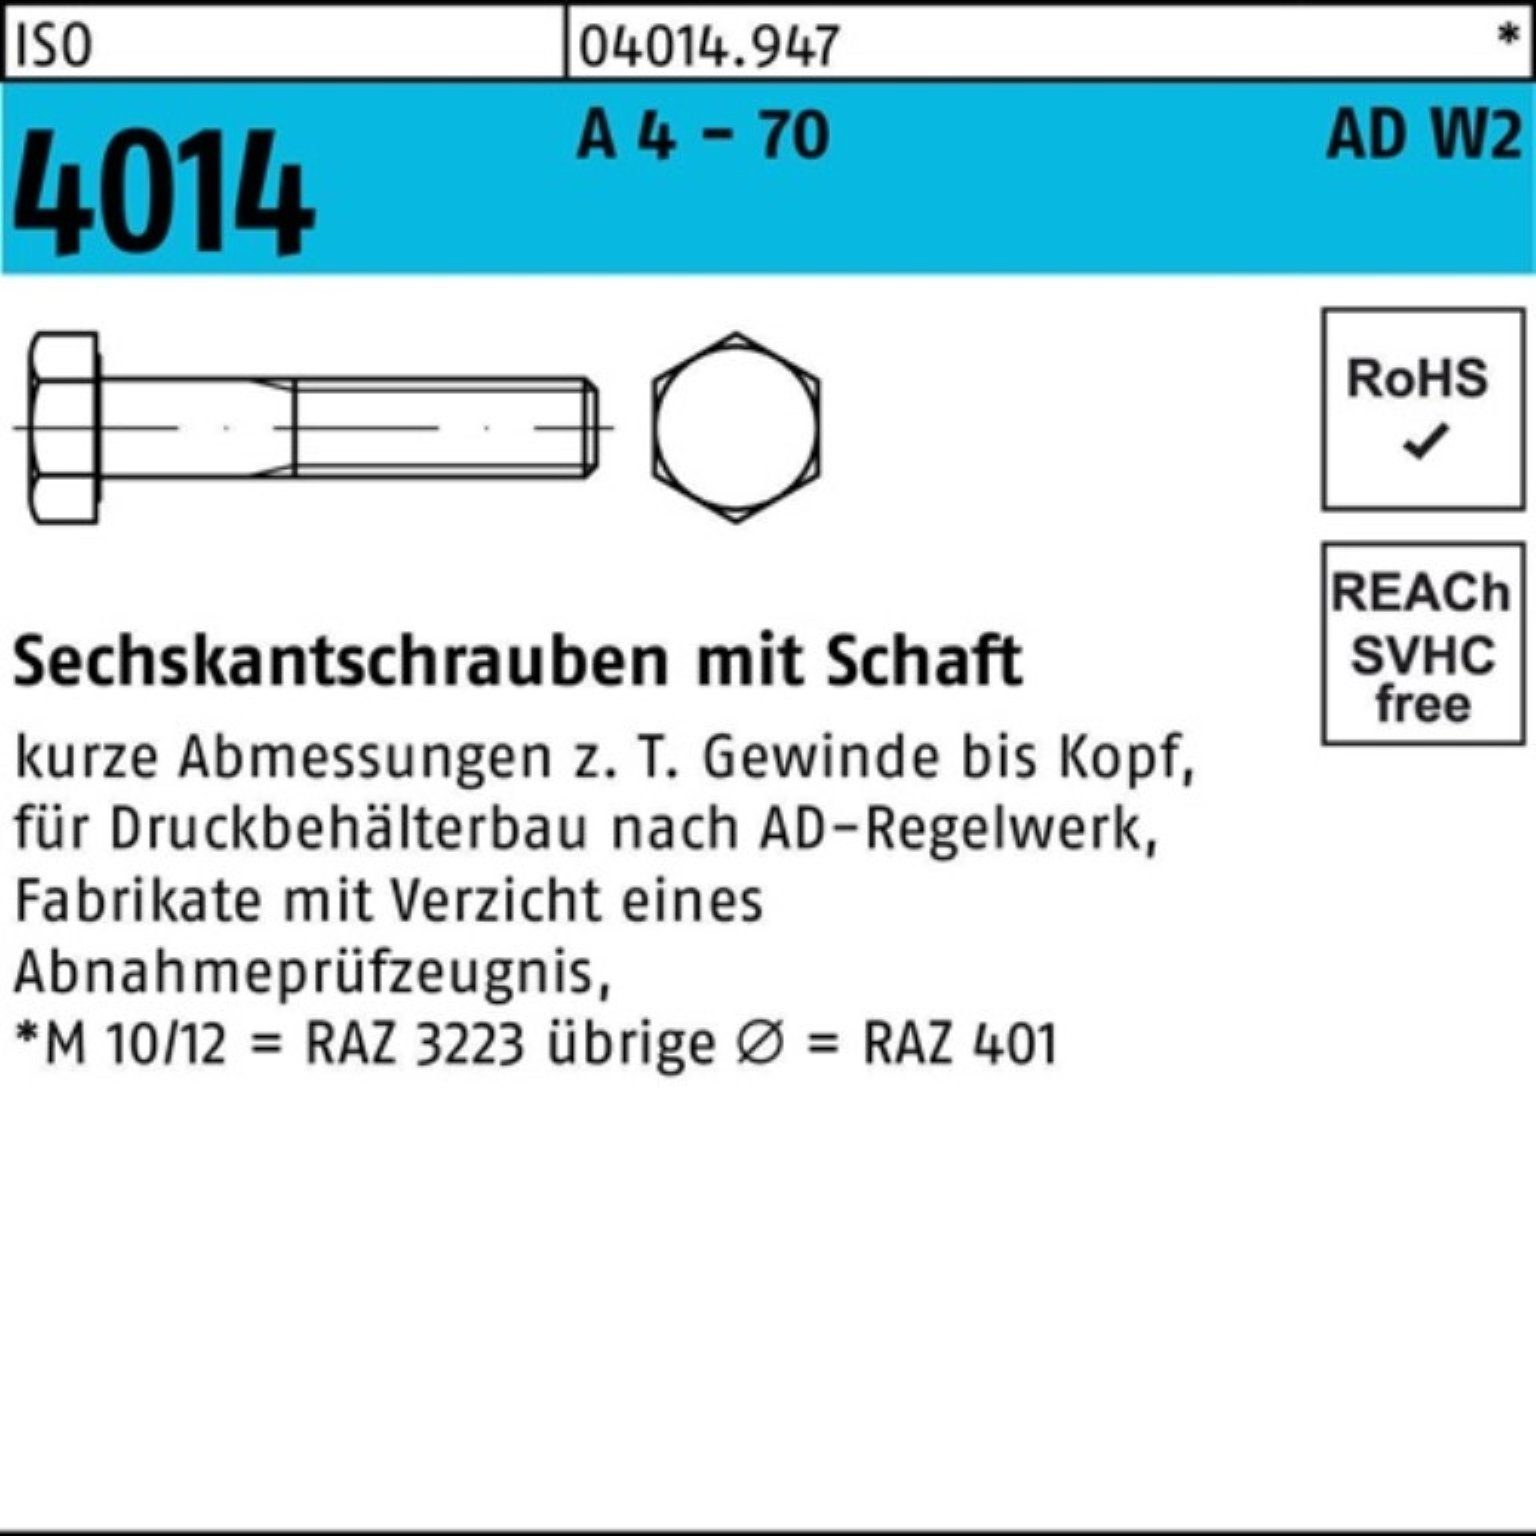 100 M12x 70 Sechskantschraube Sechskantschraube 4014 Bufab Schaft ISO 4 - AD-W2 Pack 2 100er A